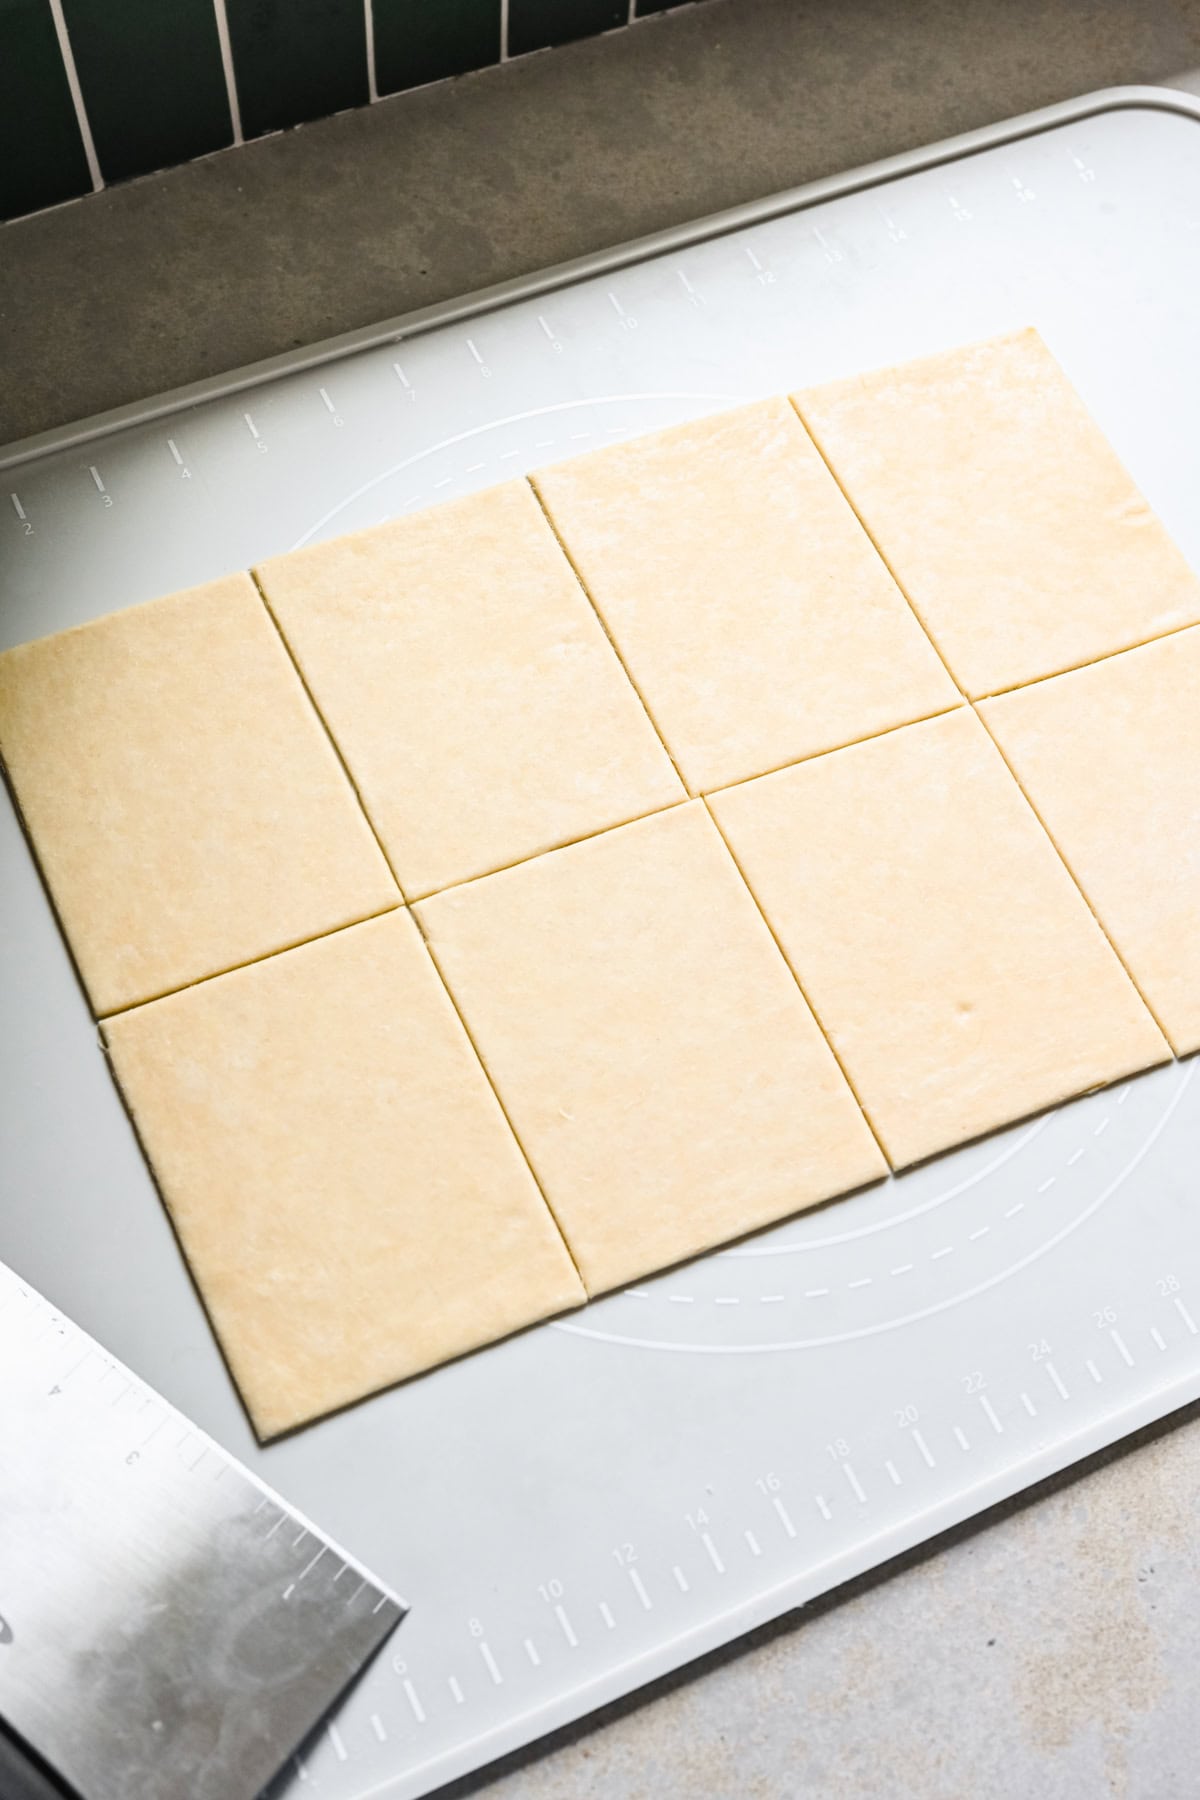 Pop tart dough cut into rectangles.